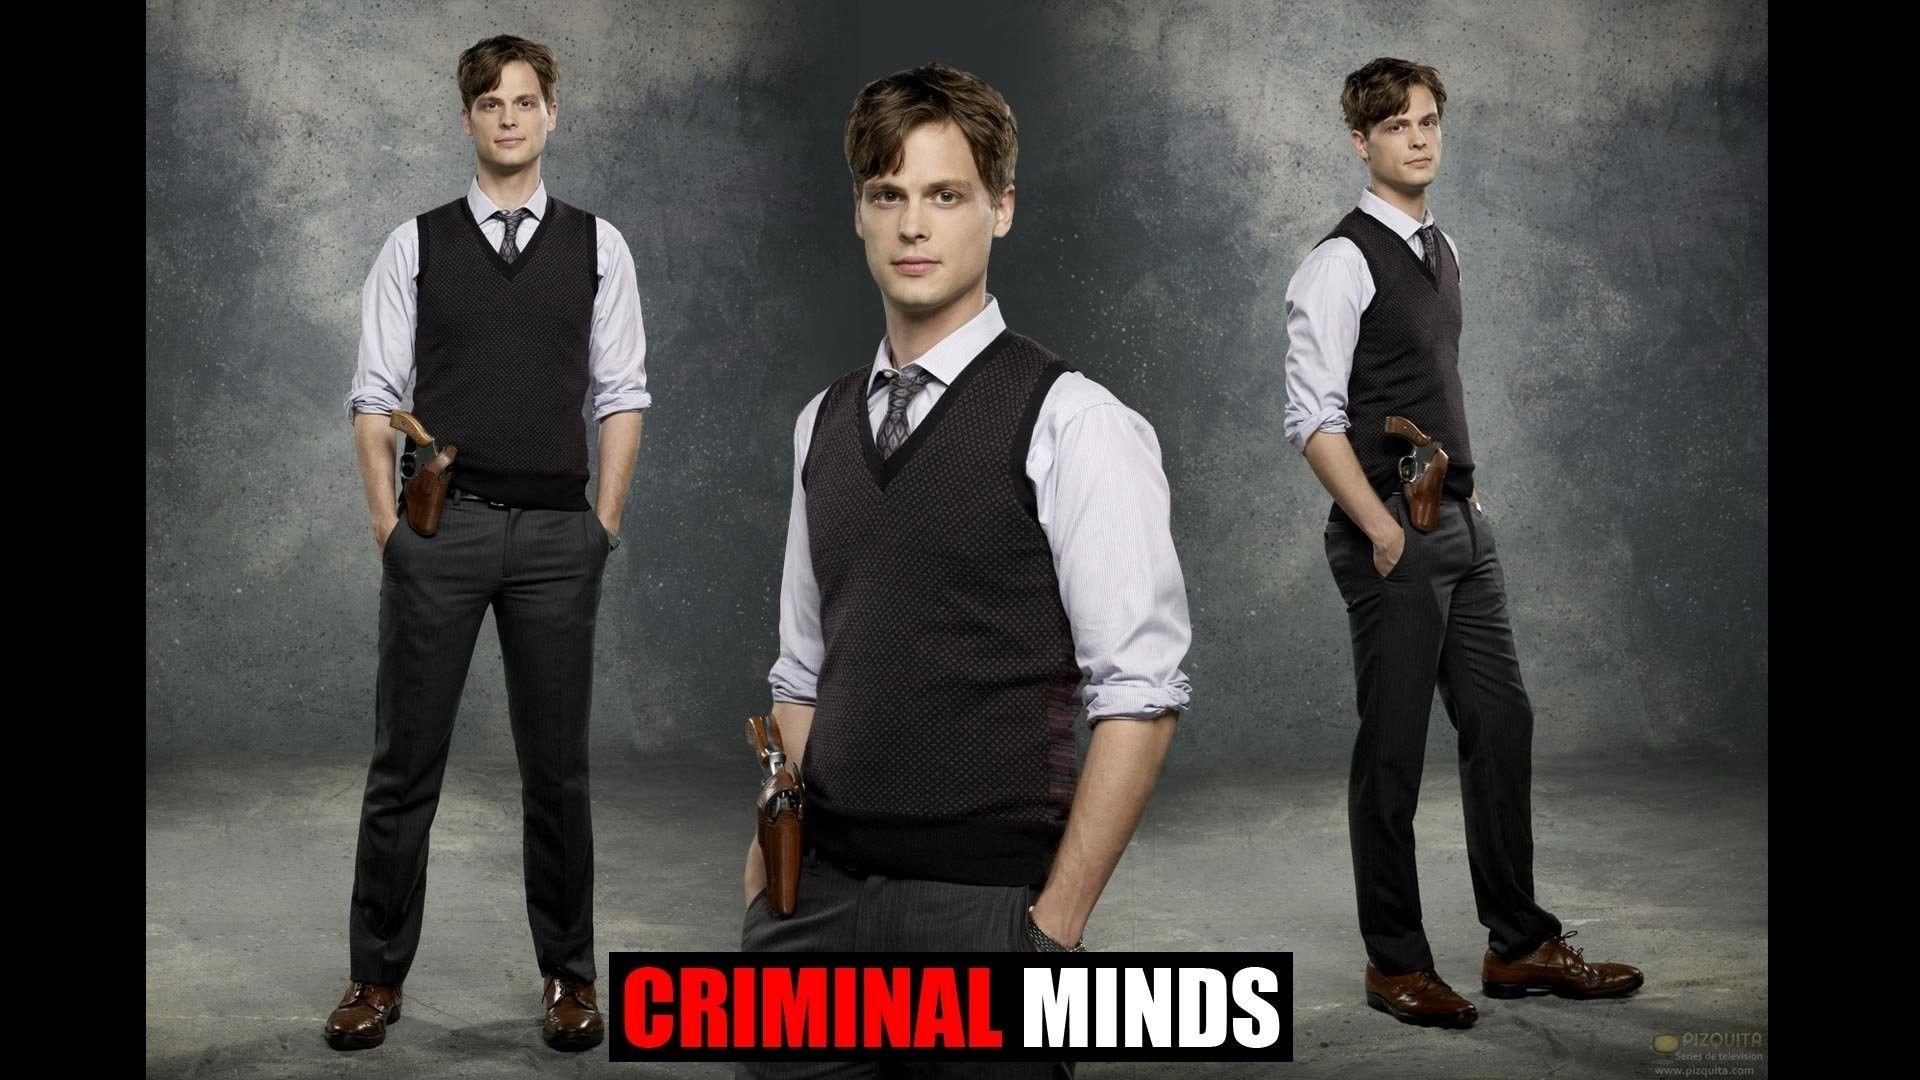 Wallpaper serial tv series Matthew Gray Gubler Goodlife criminal minds  Spencer Reid images for desktop section фильмы  download